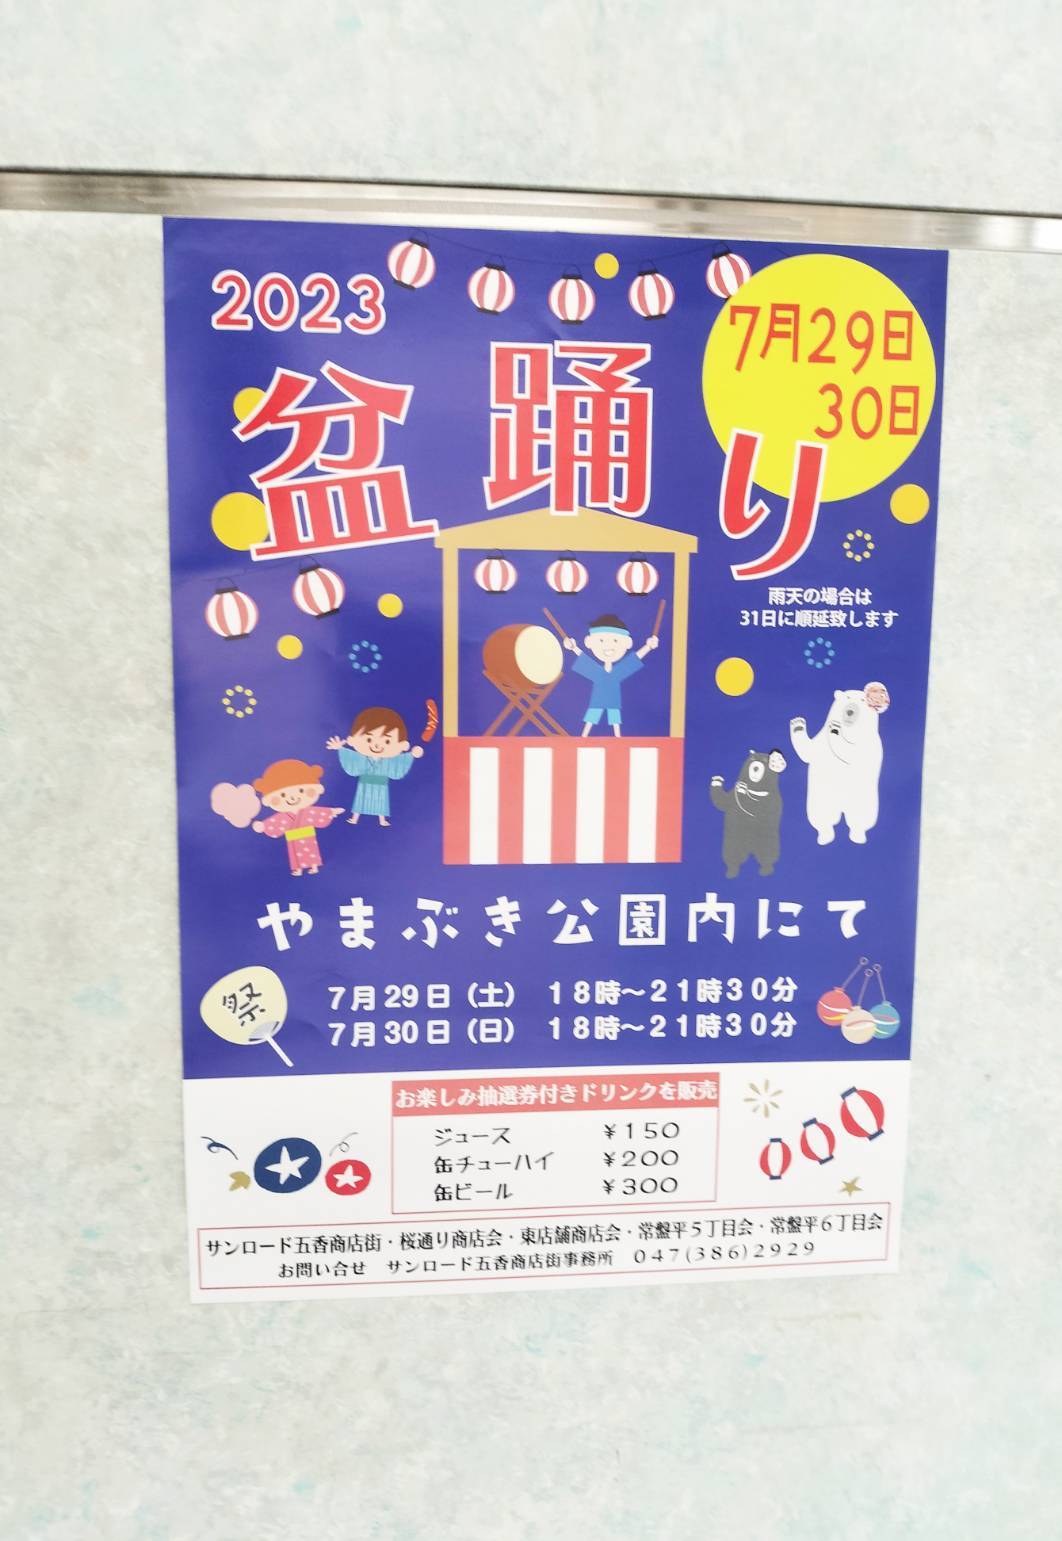 やまぶき公園2023年盆踊りイベント夏祭り千葉県松戸市五香常盤平